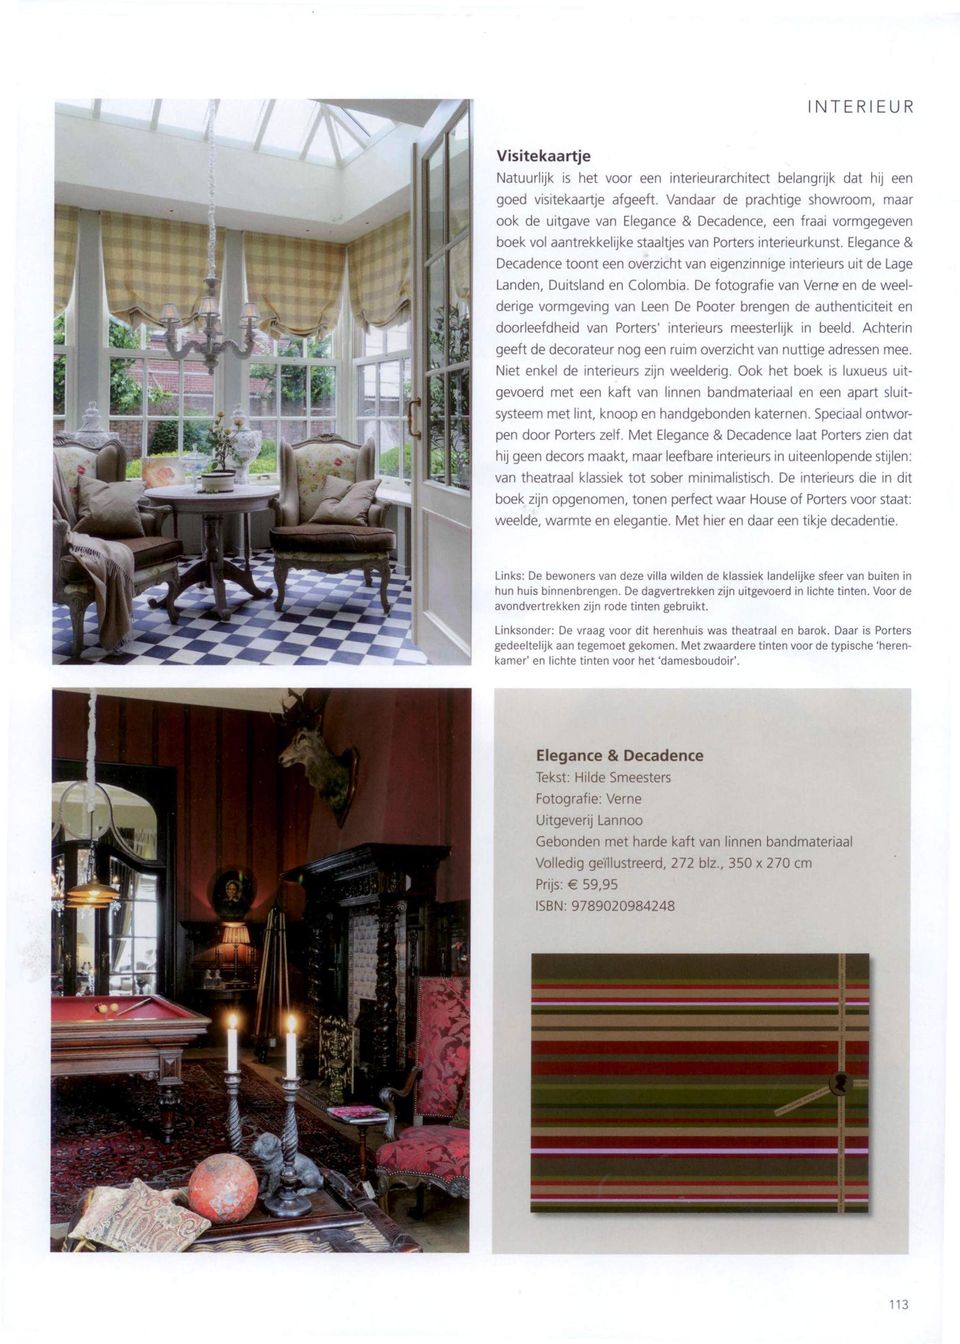 Elegance& Decadence toont een overzicht van eigenzinnige interieurs uit de Lage Landen, Duitsland en Colombia.